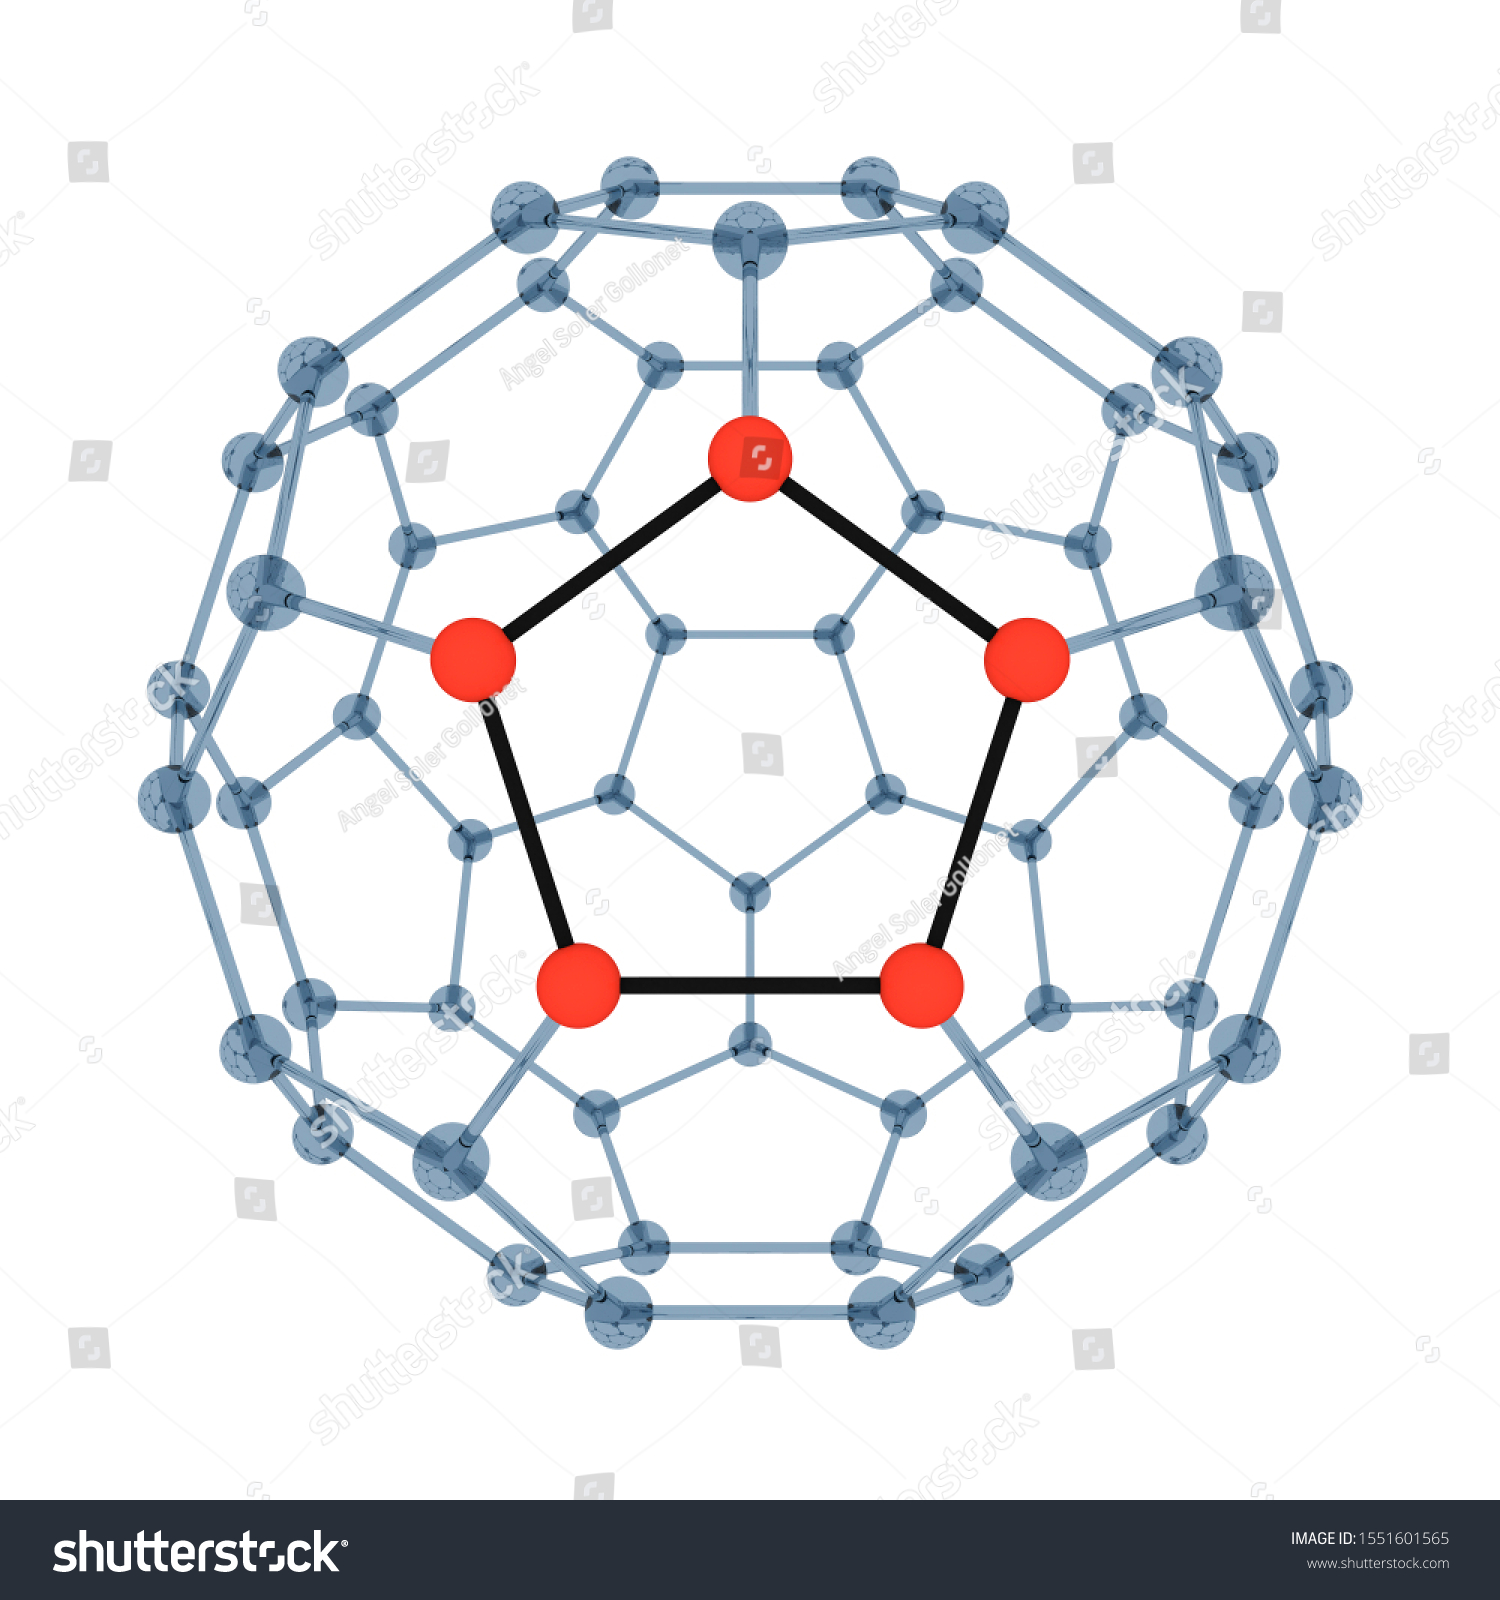 buckminsterfullerene molecule